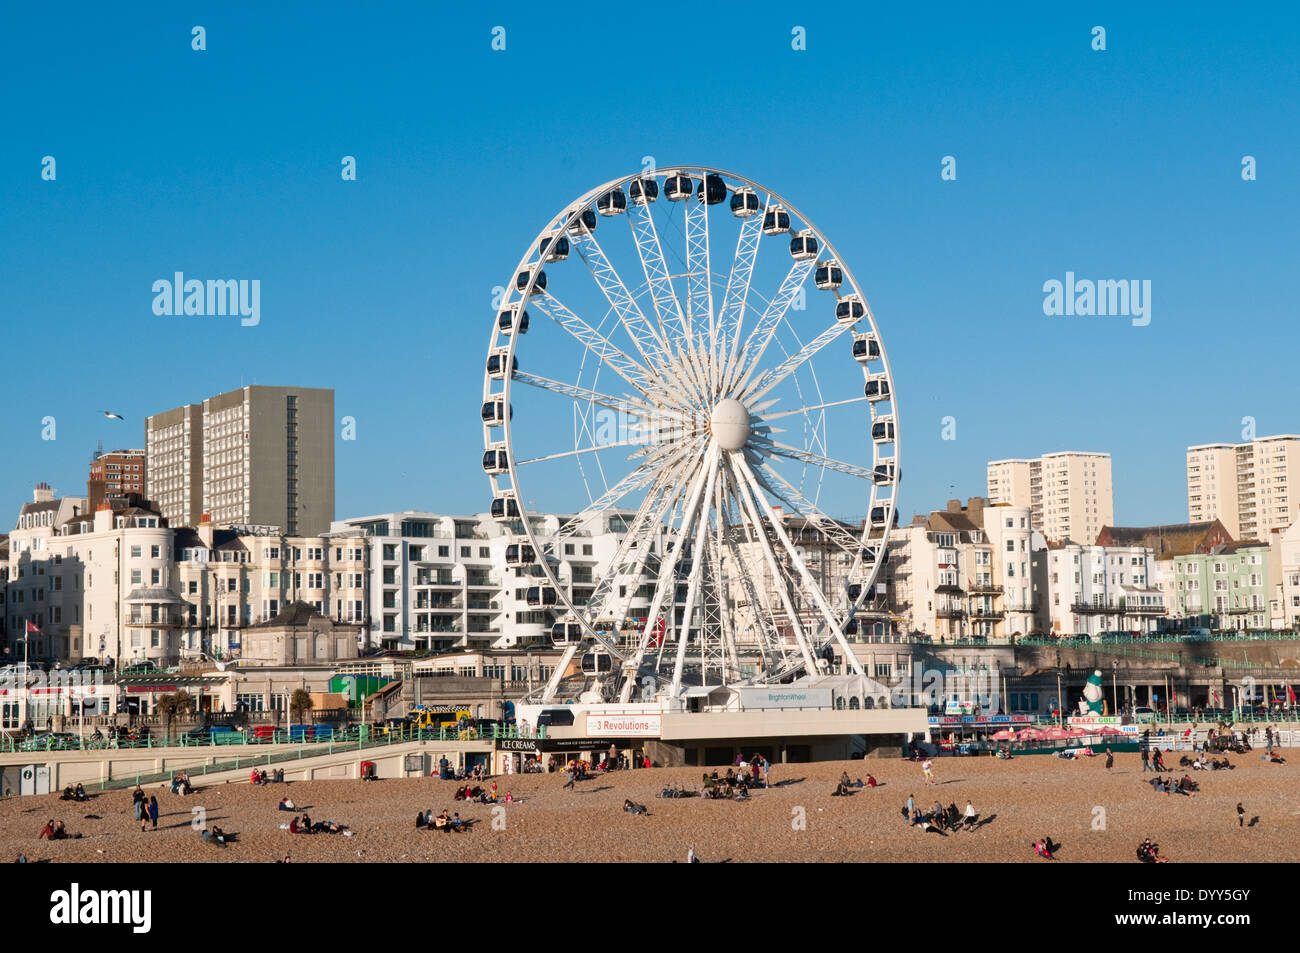 La grande roue roue de Brighton sur le front de mer de Brighton, East Sussex, UK, lors d'une journée ensoleillée Banque D'Images